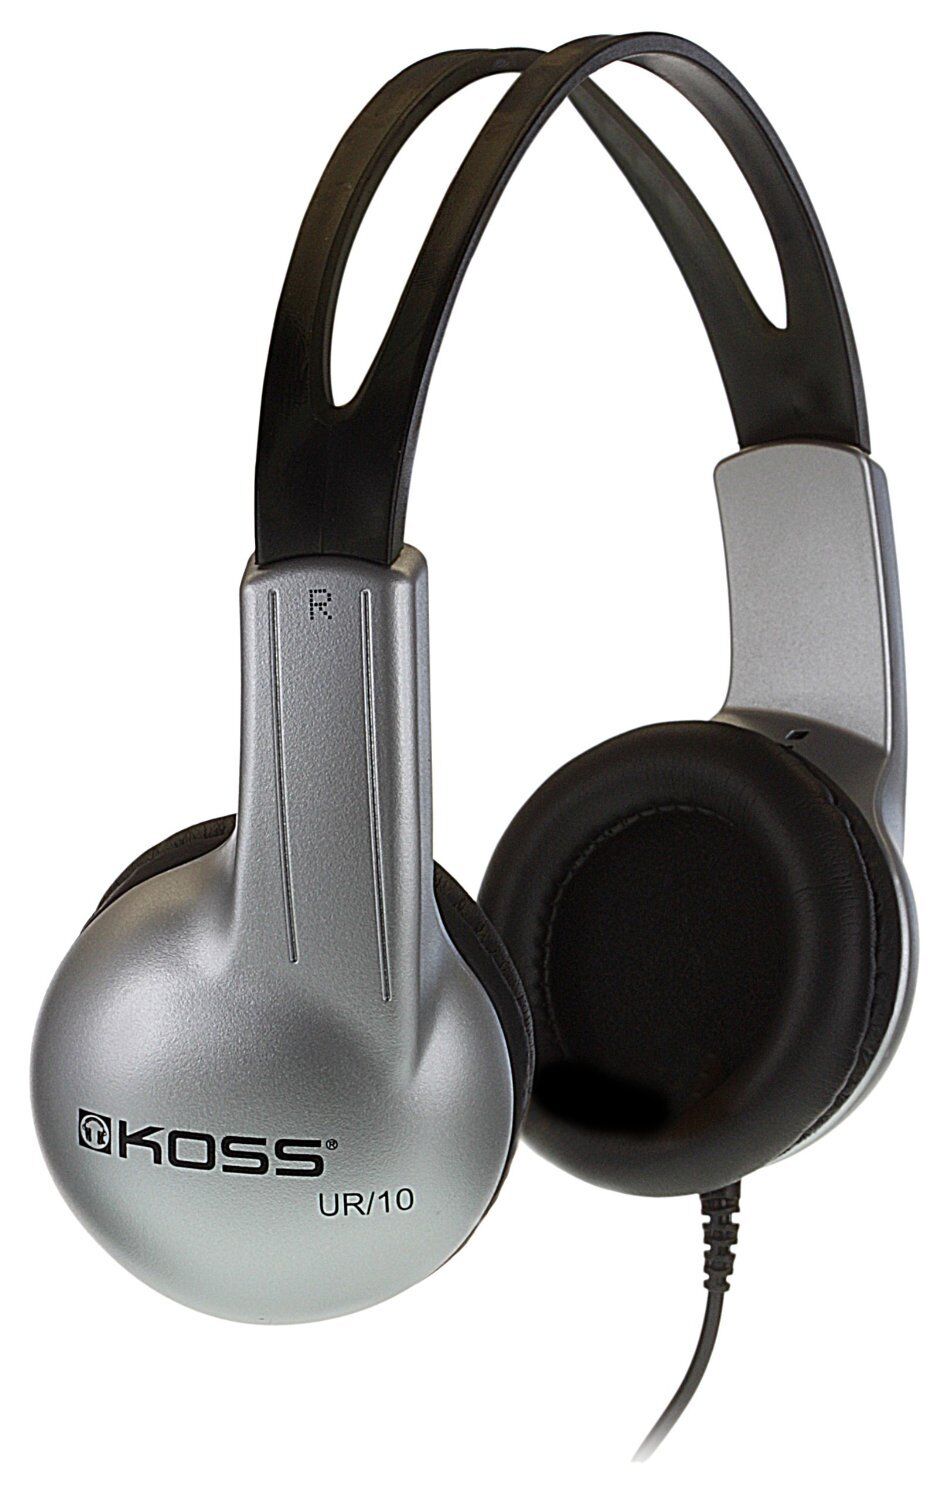 Koss UR-10 On Ear Adjustable Stereo Headphones 